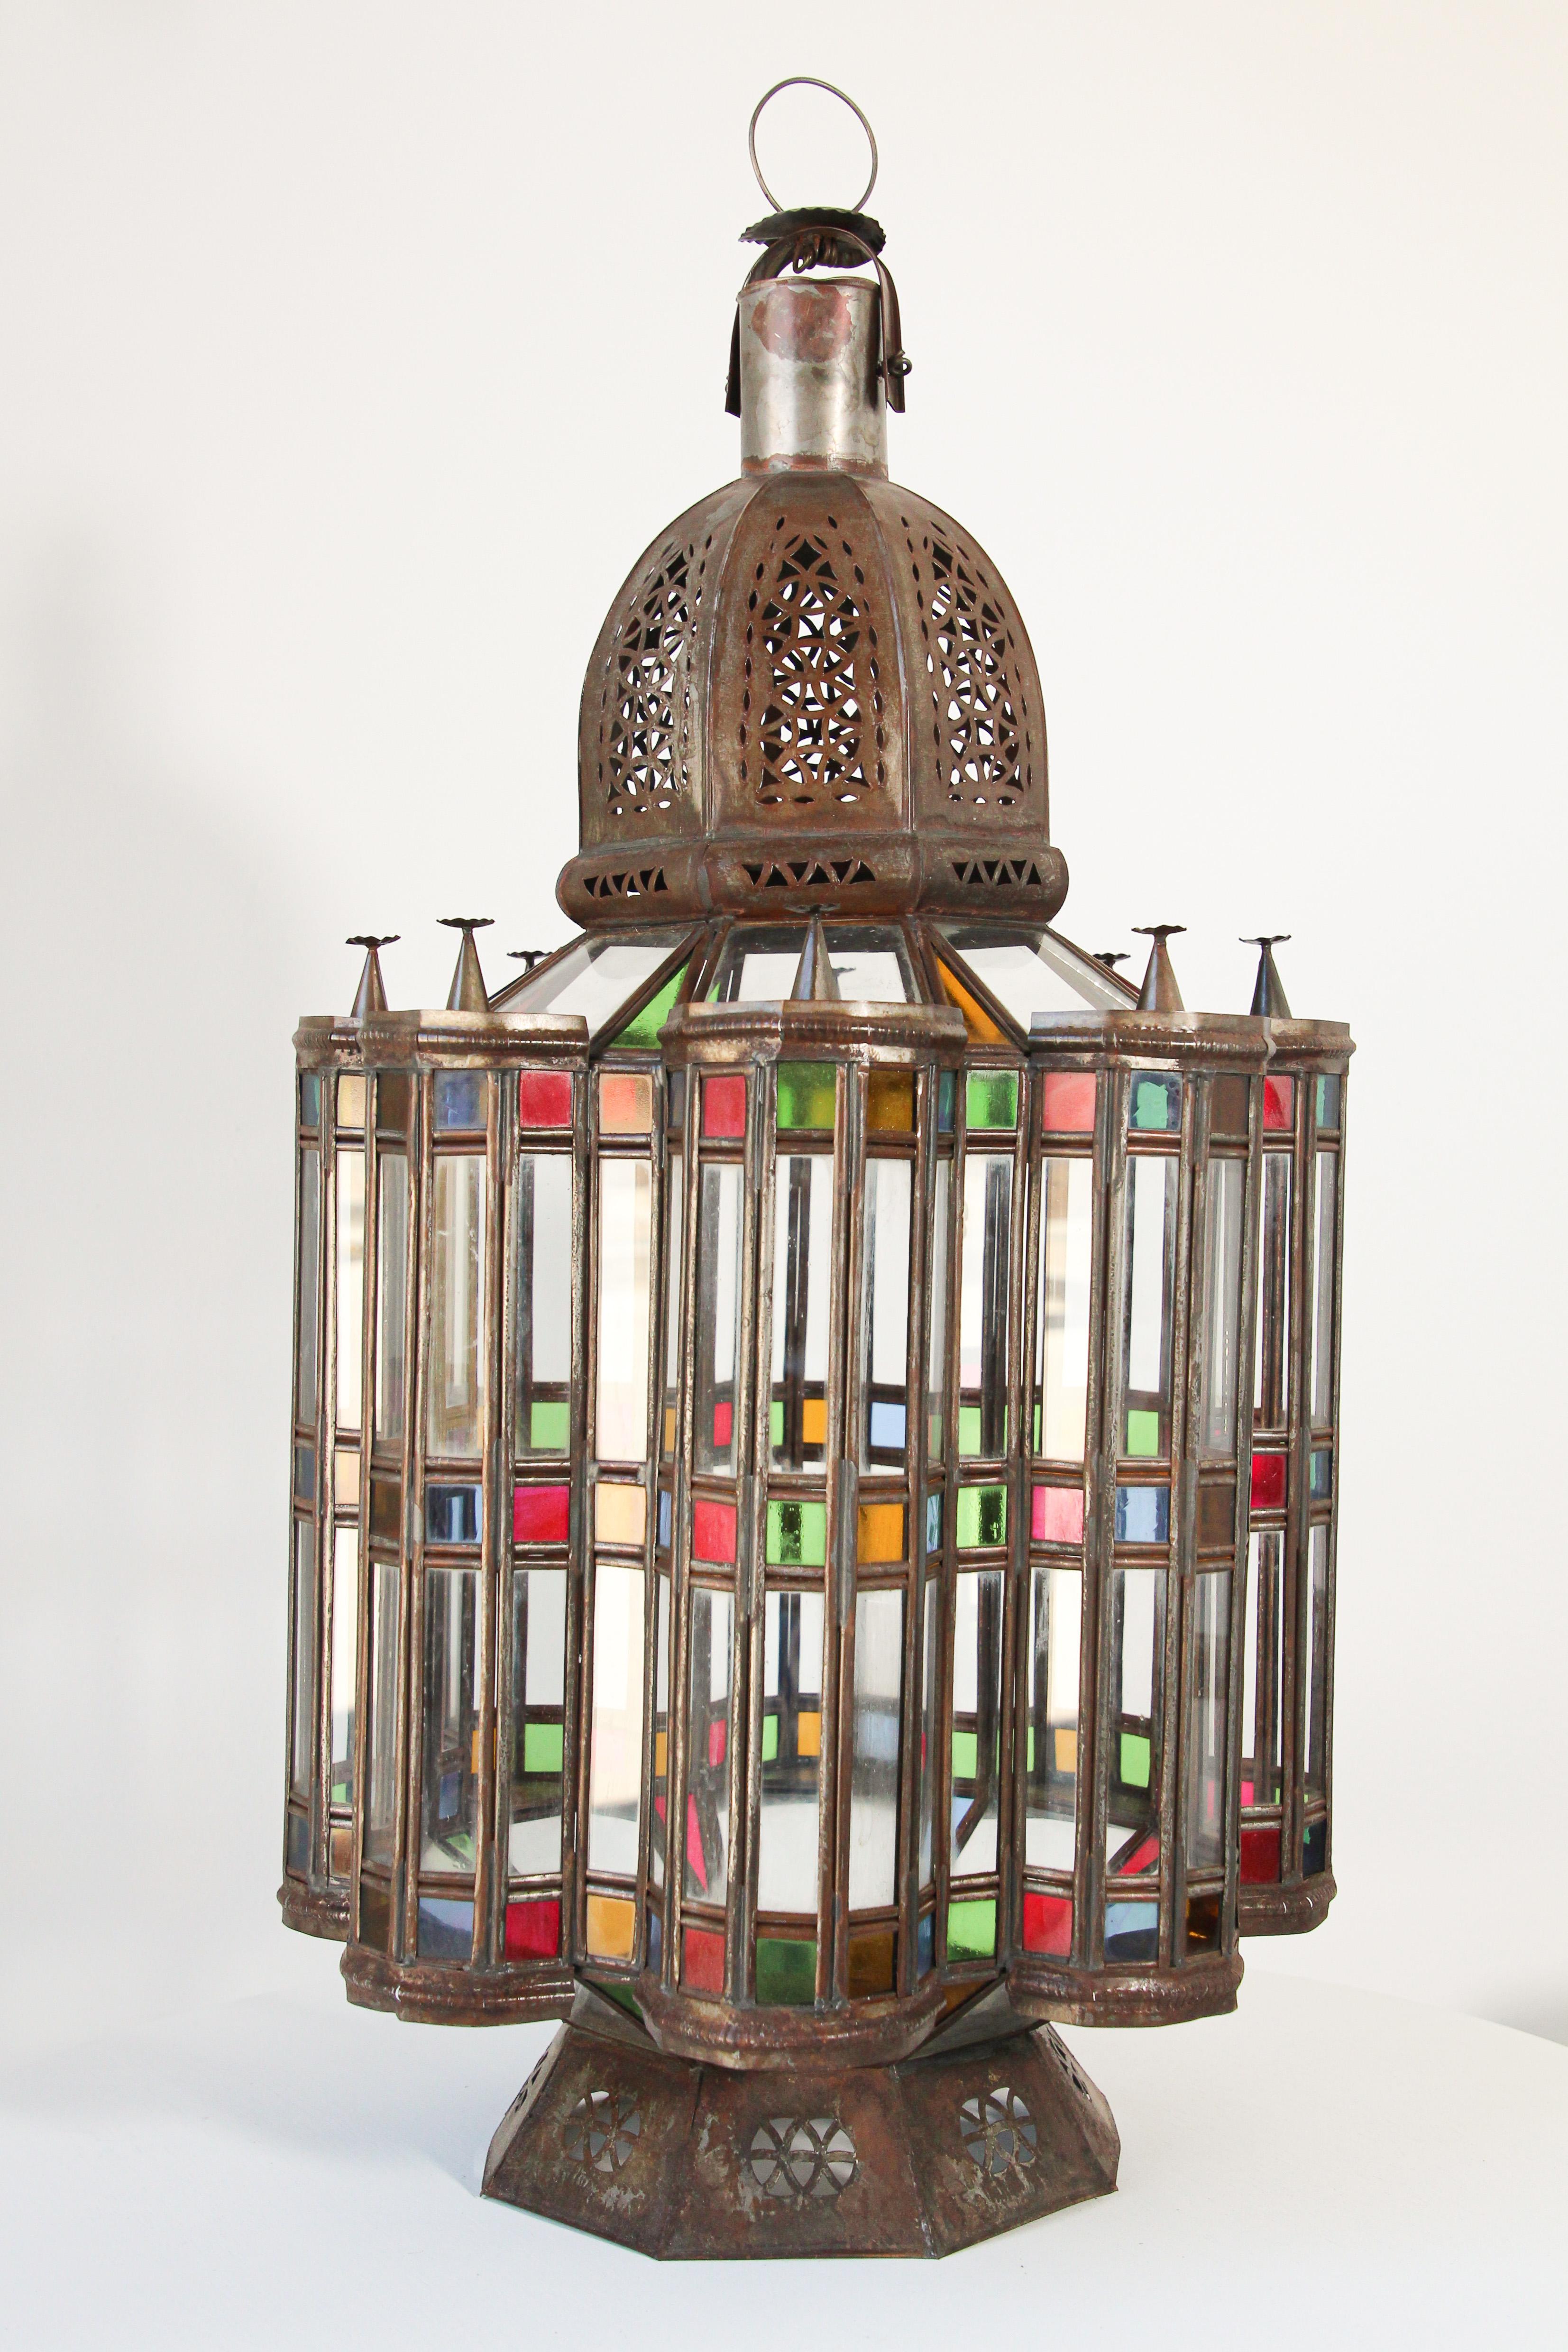 Große marokkanische Mamounia-Glaslaterne mit maurischem Design.
Elegant Beeindruckend durchbrochenes marokkanisches Windlicht aus Metall und Glas.
Große 29 Zoll hoch mit klaren, blau, grün, rot und gold geblasenem Glas rundum.
Sehr feine